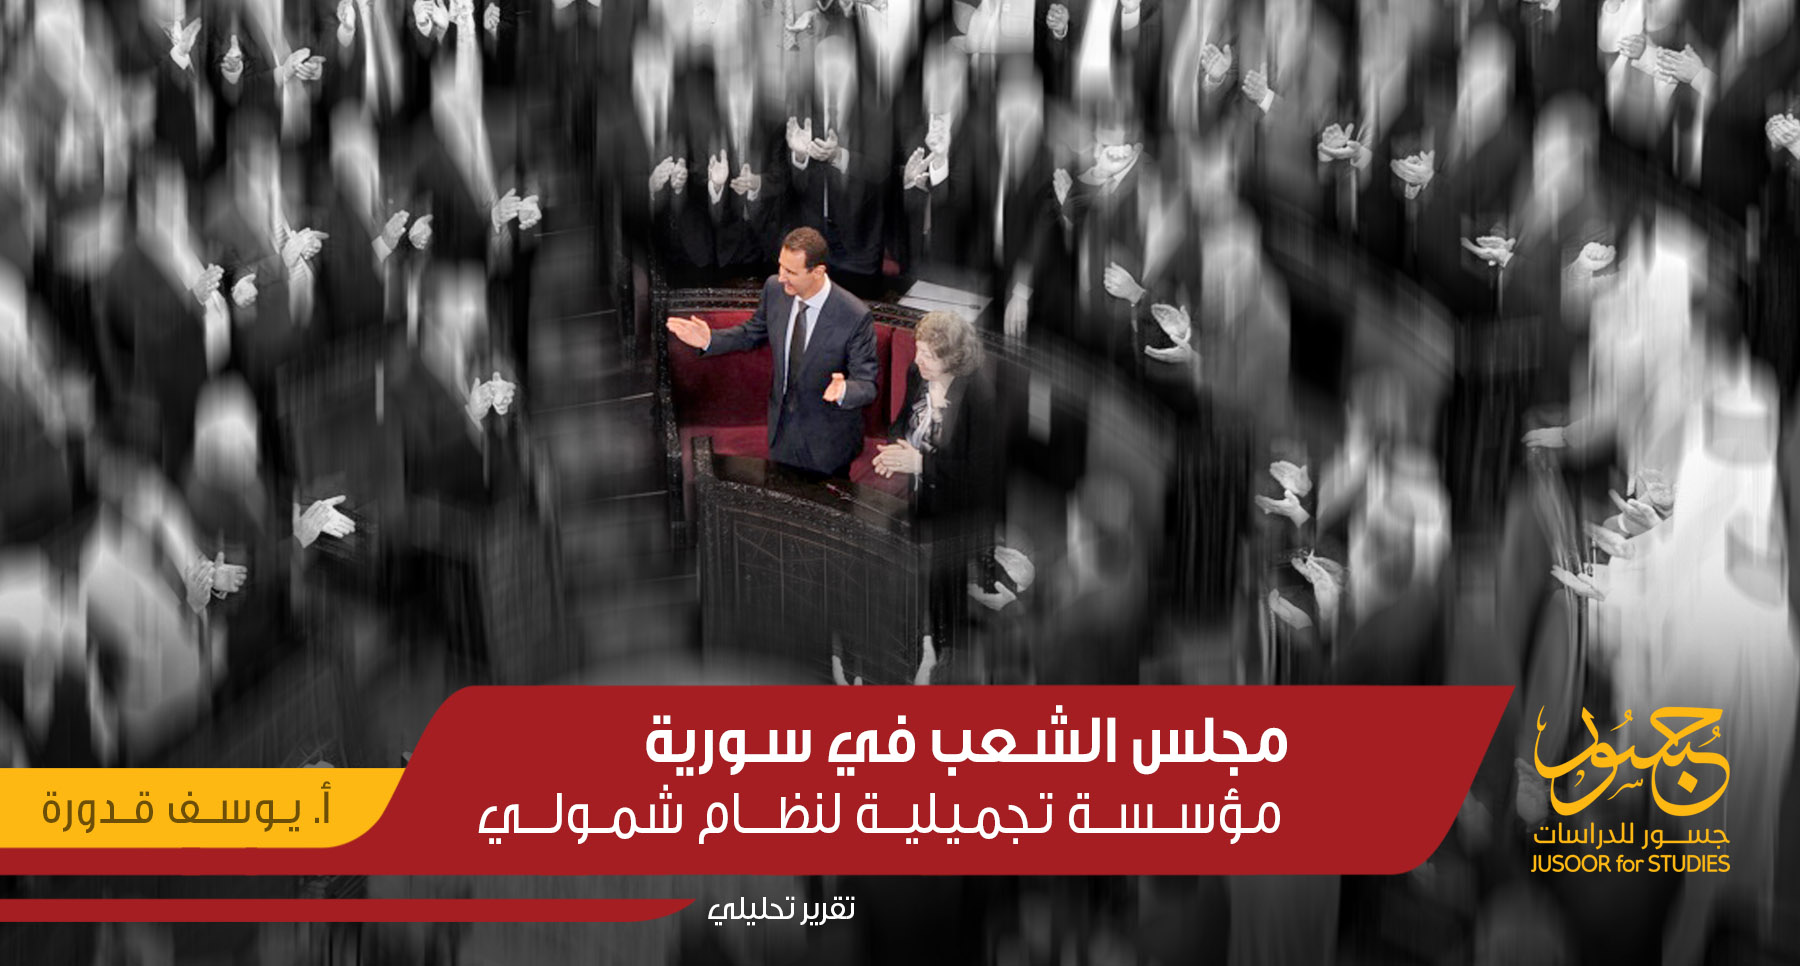 مجلس الشعب في سورية.. مؤسسة تجميلية لنظام شمولي